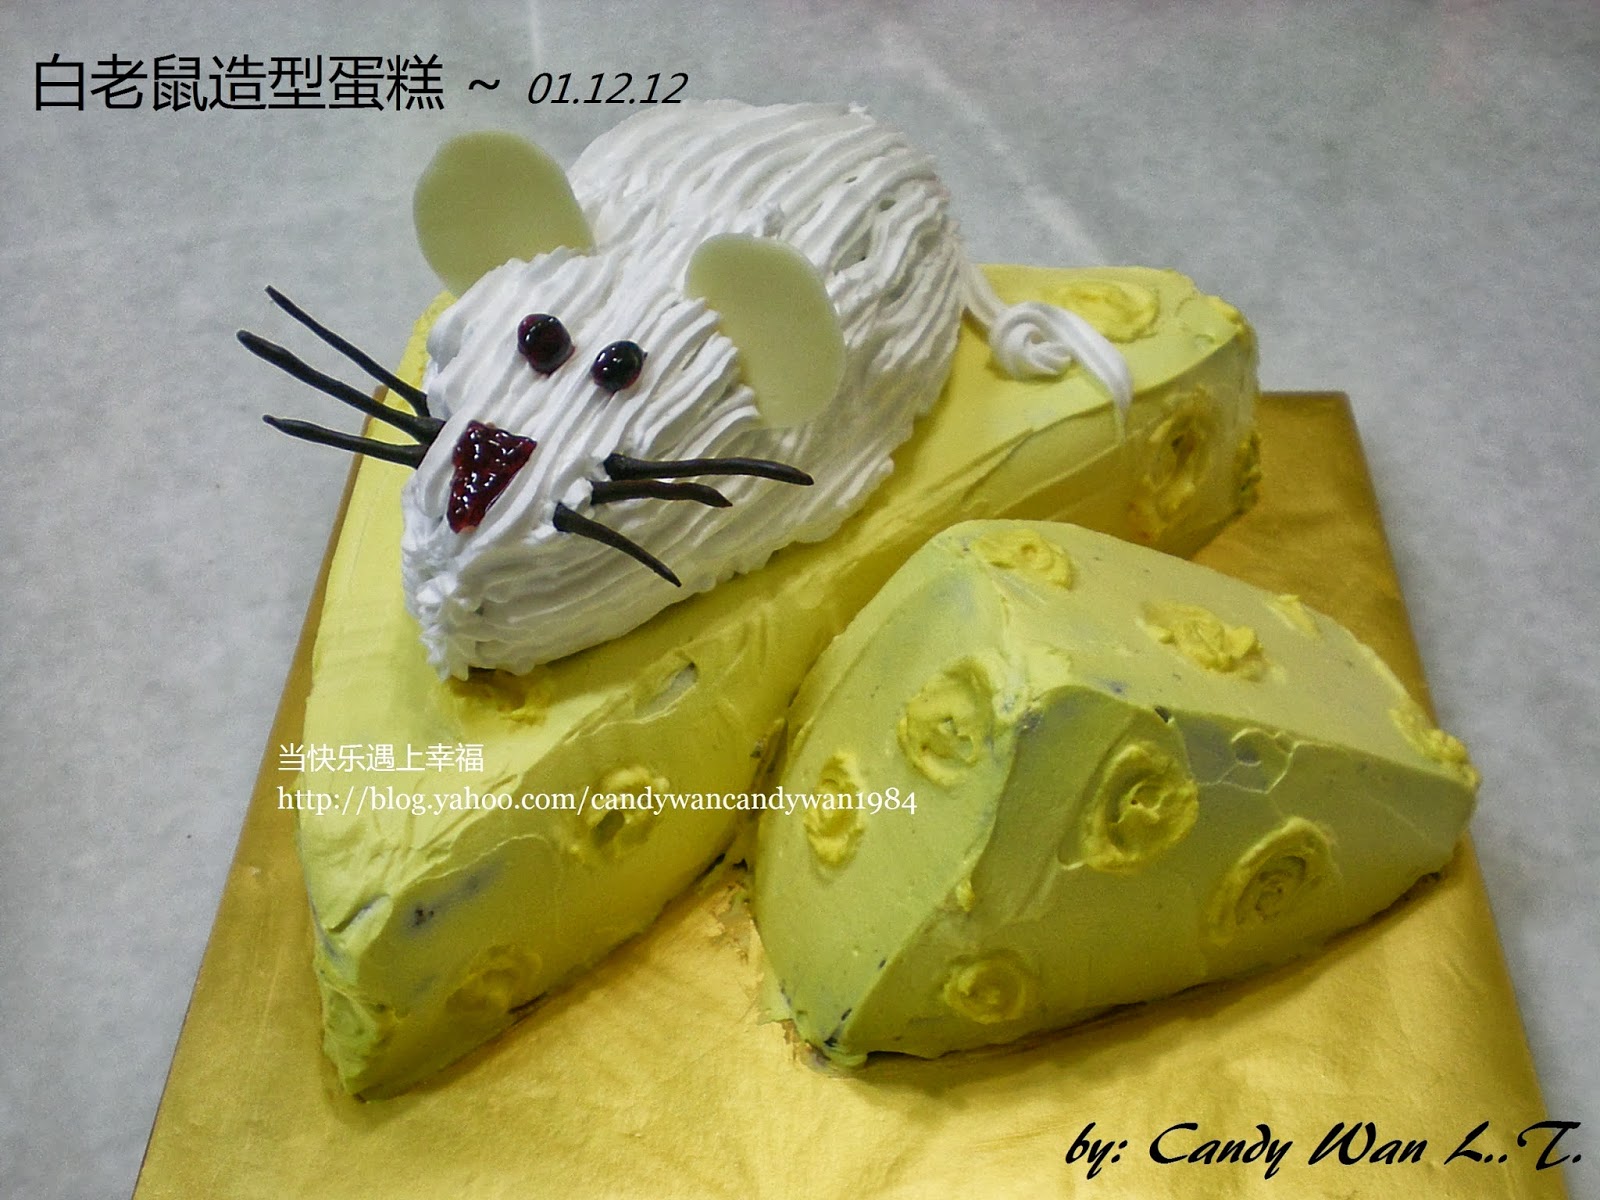 小老鼠生日蛋糕图片-图库-五毛网